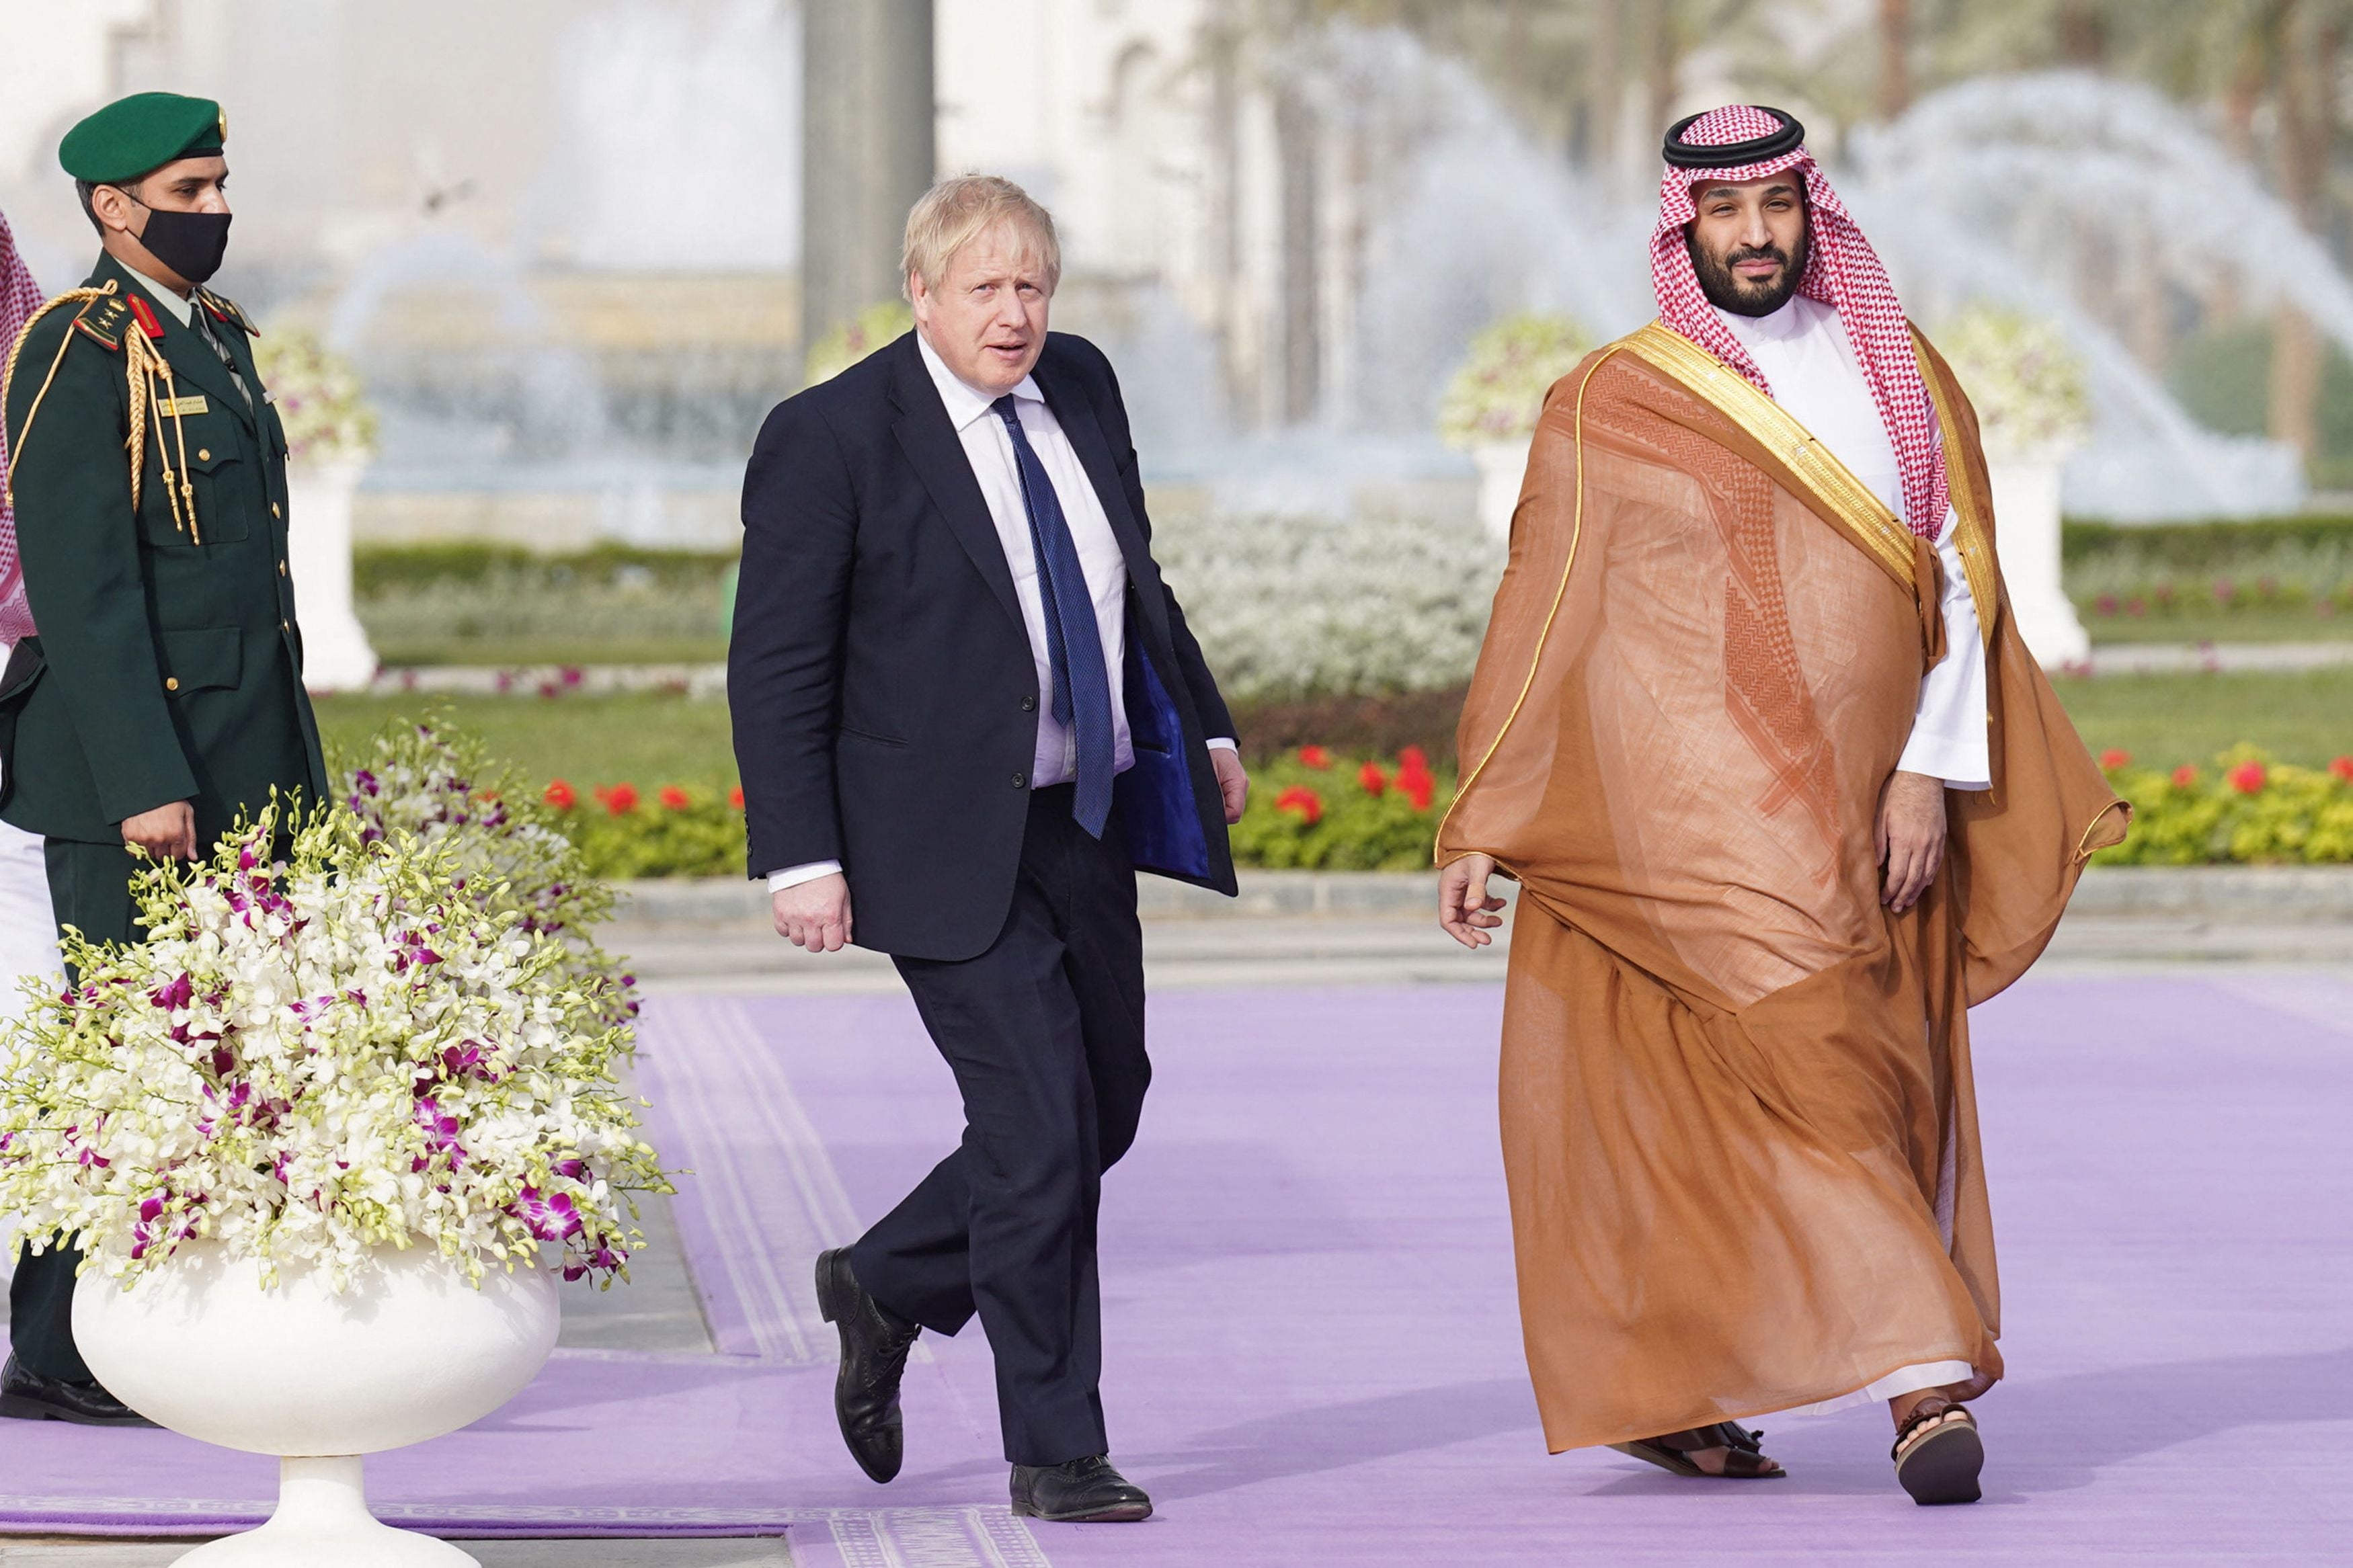 Boris Johnson is welcomed by Mohammed bin Salman in Saudi Arabia on Wednesday